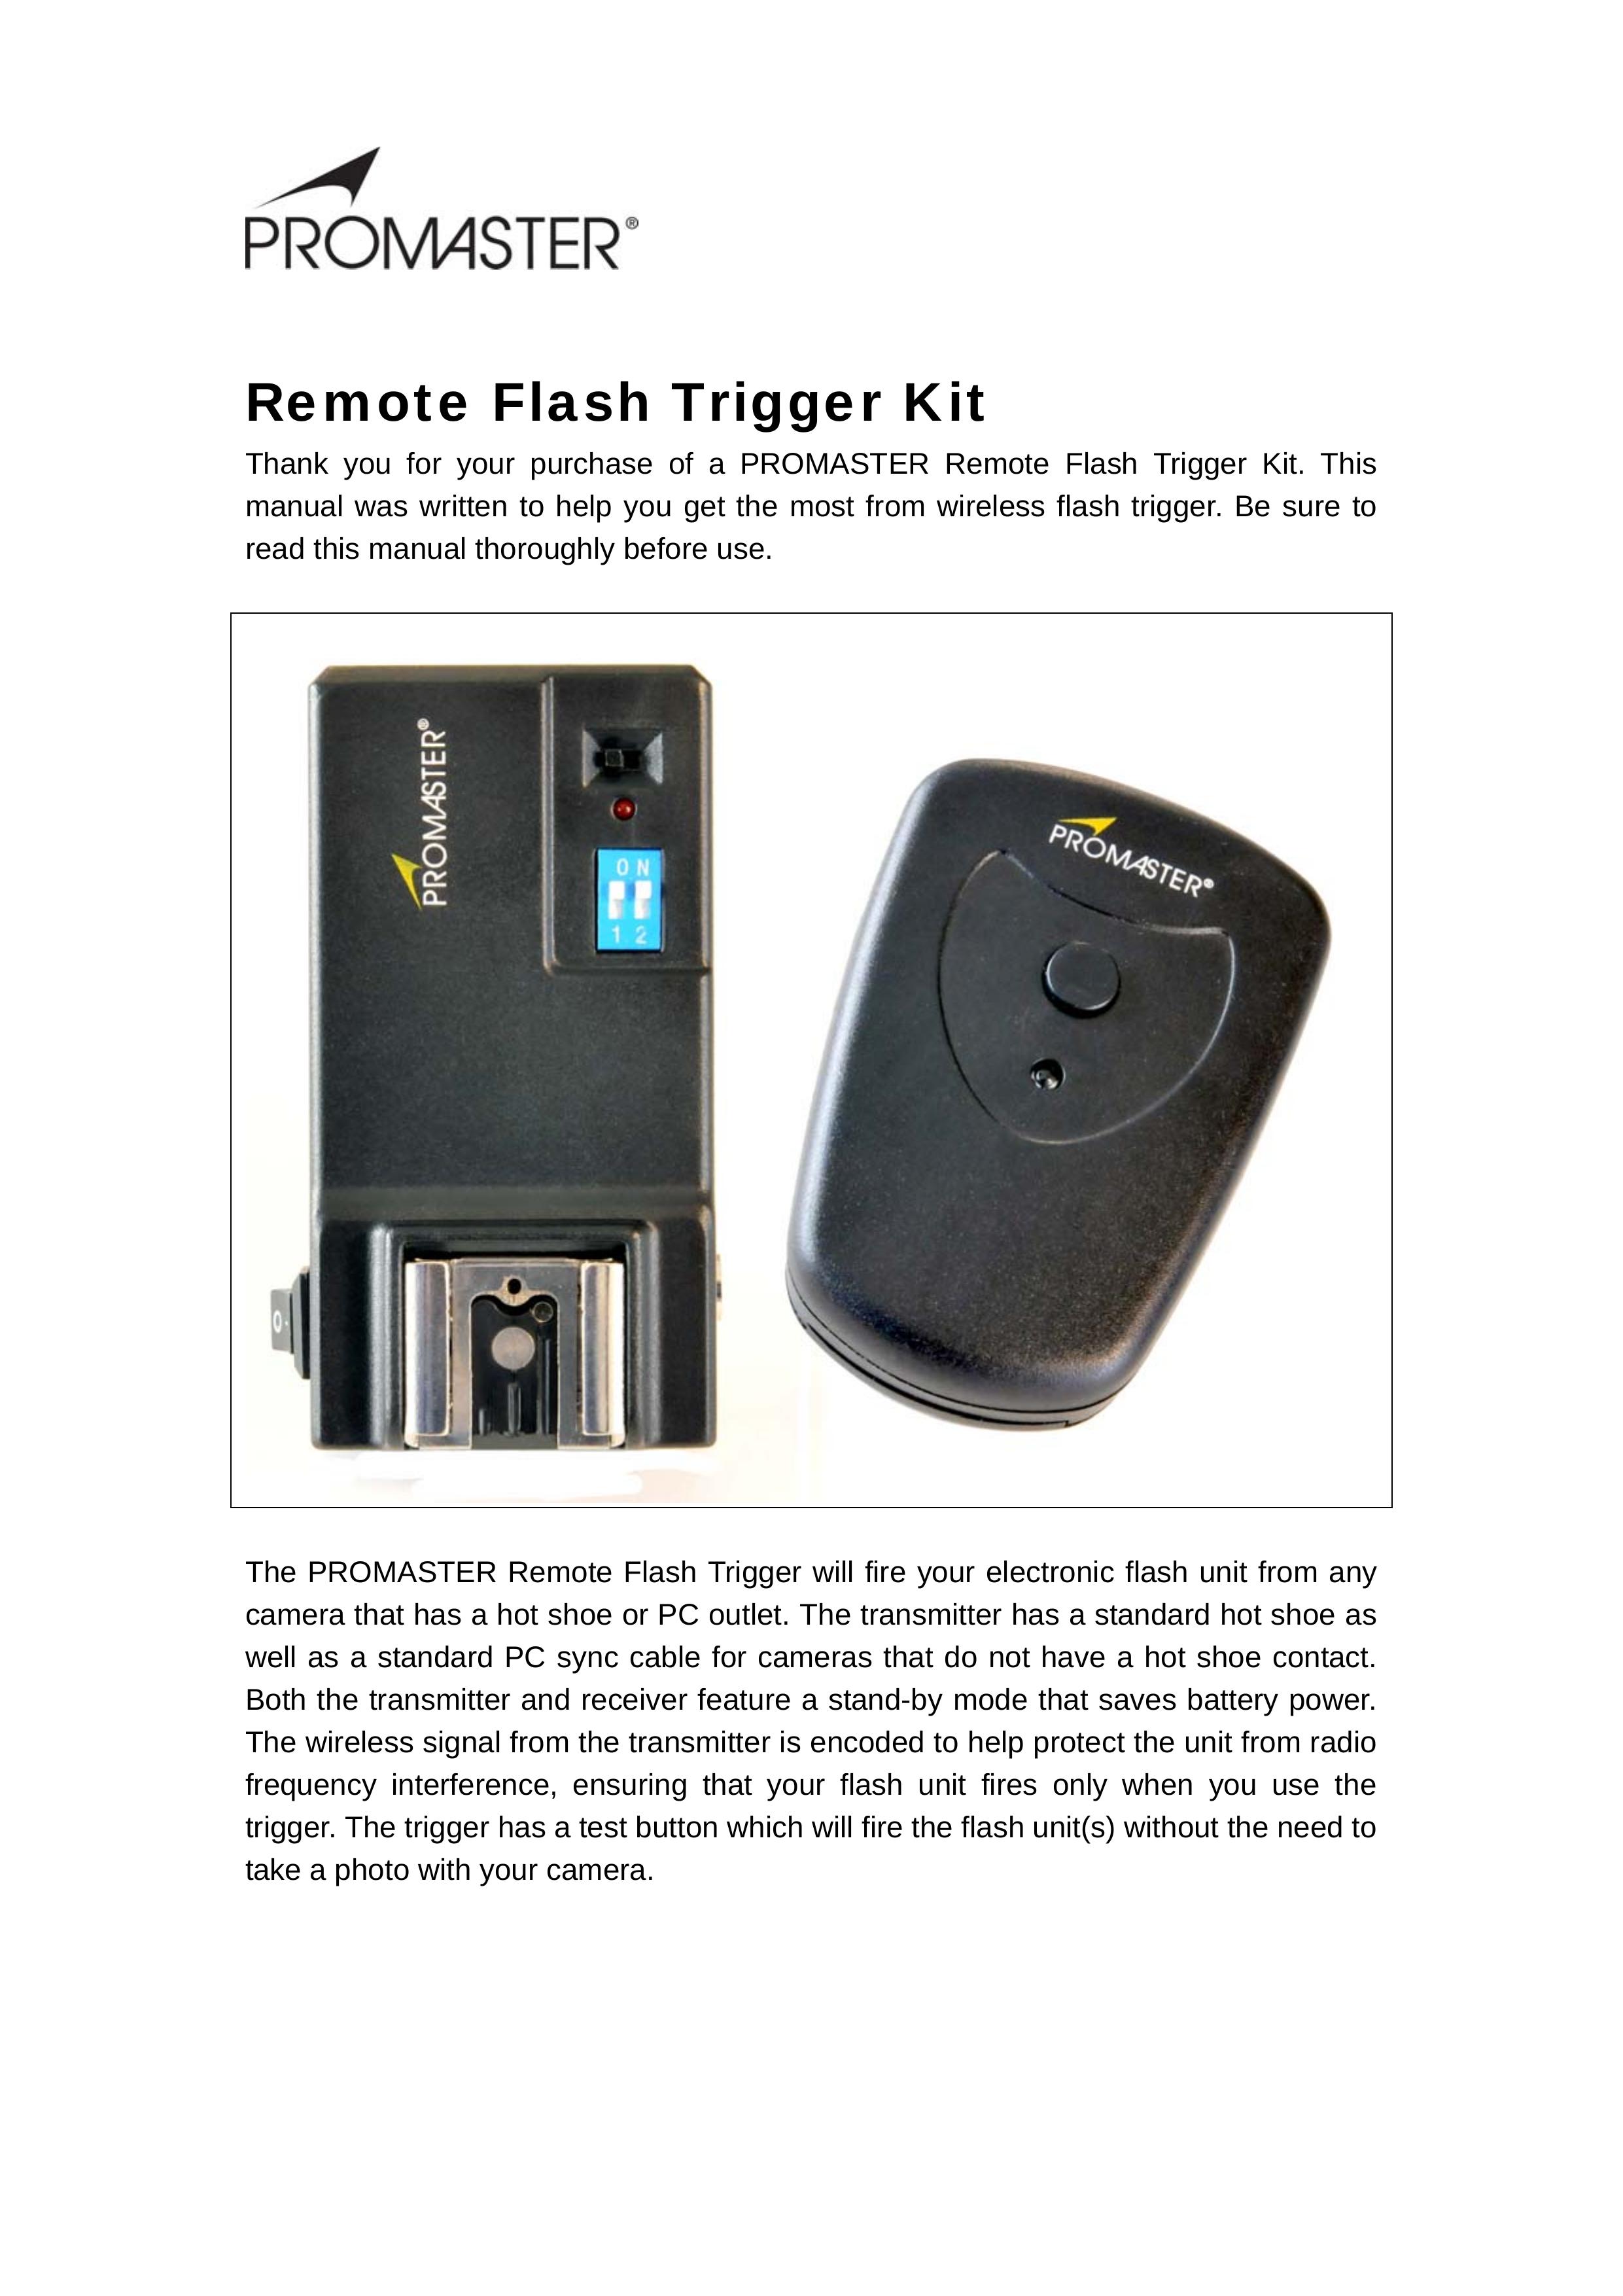 ProMaster 5734 Camera Accessories User Manual